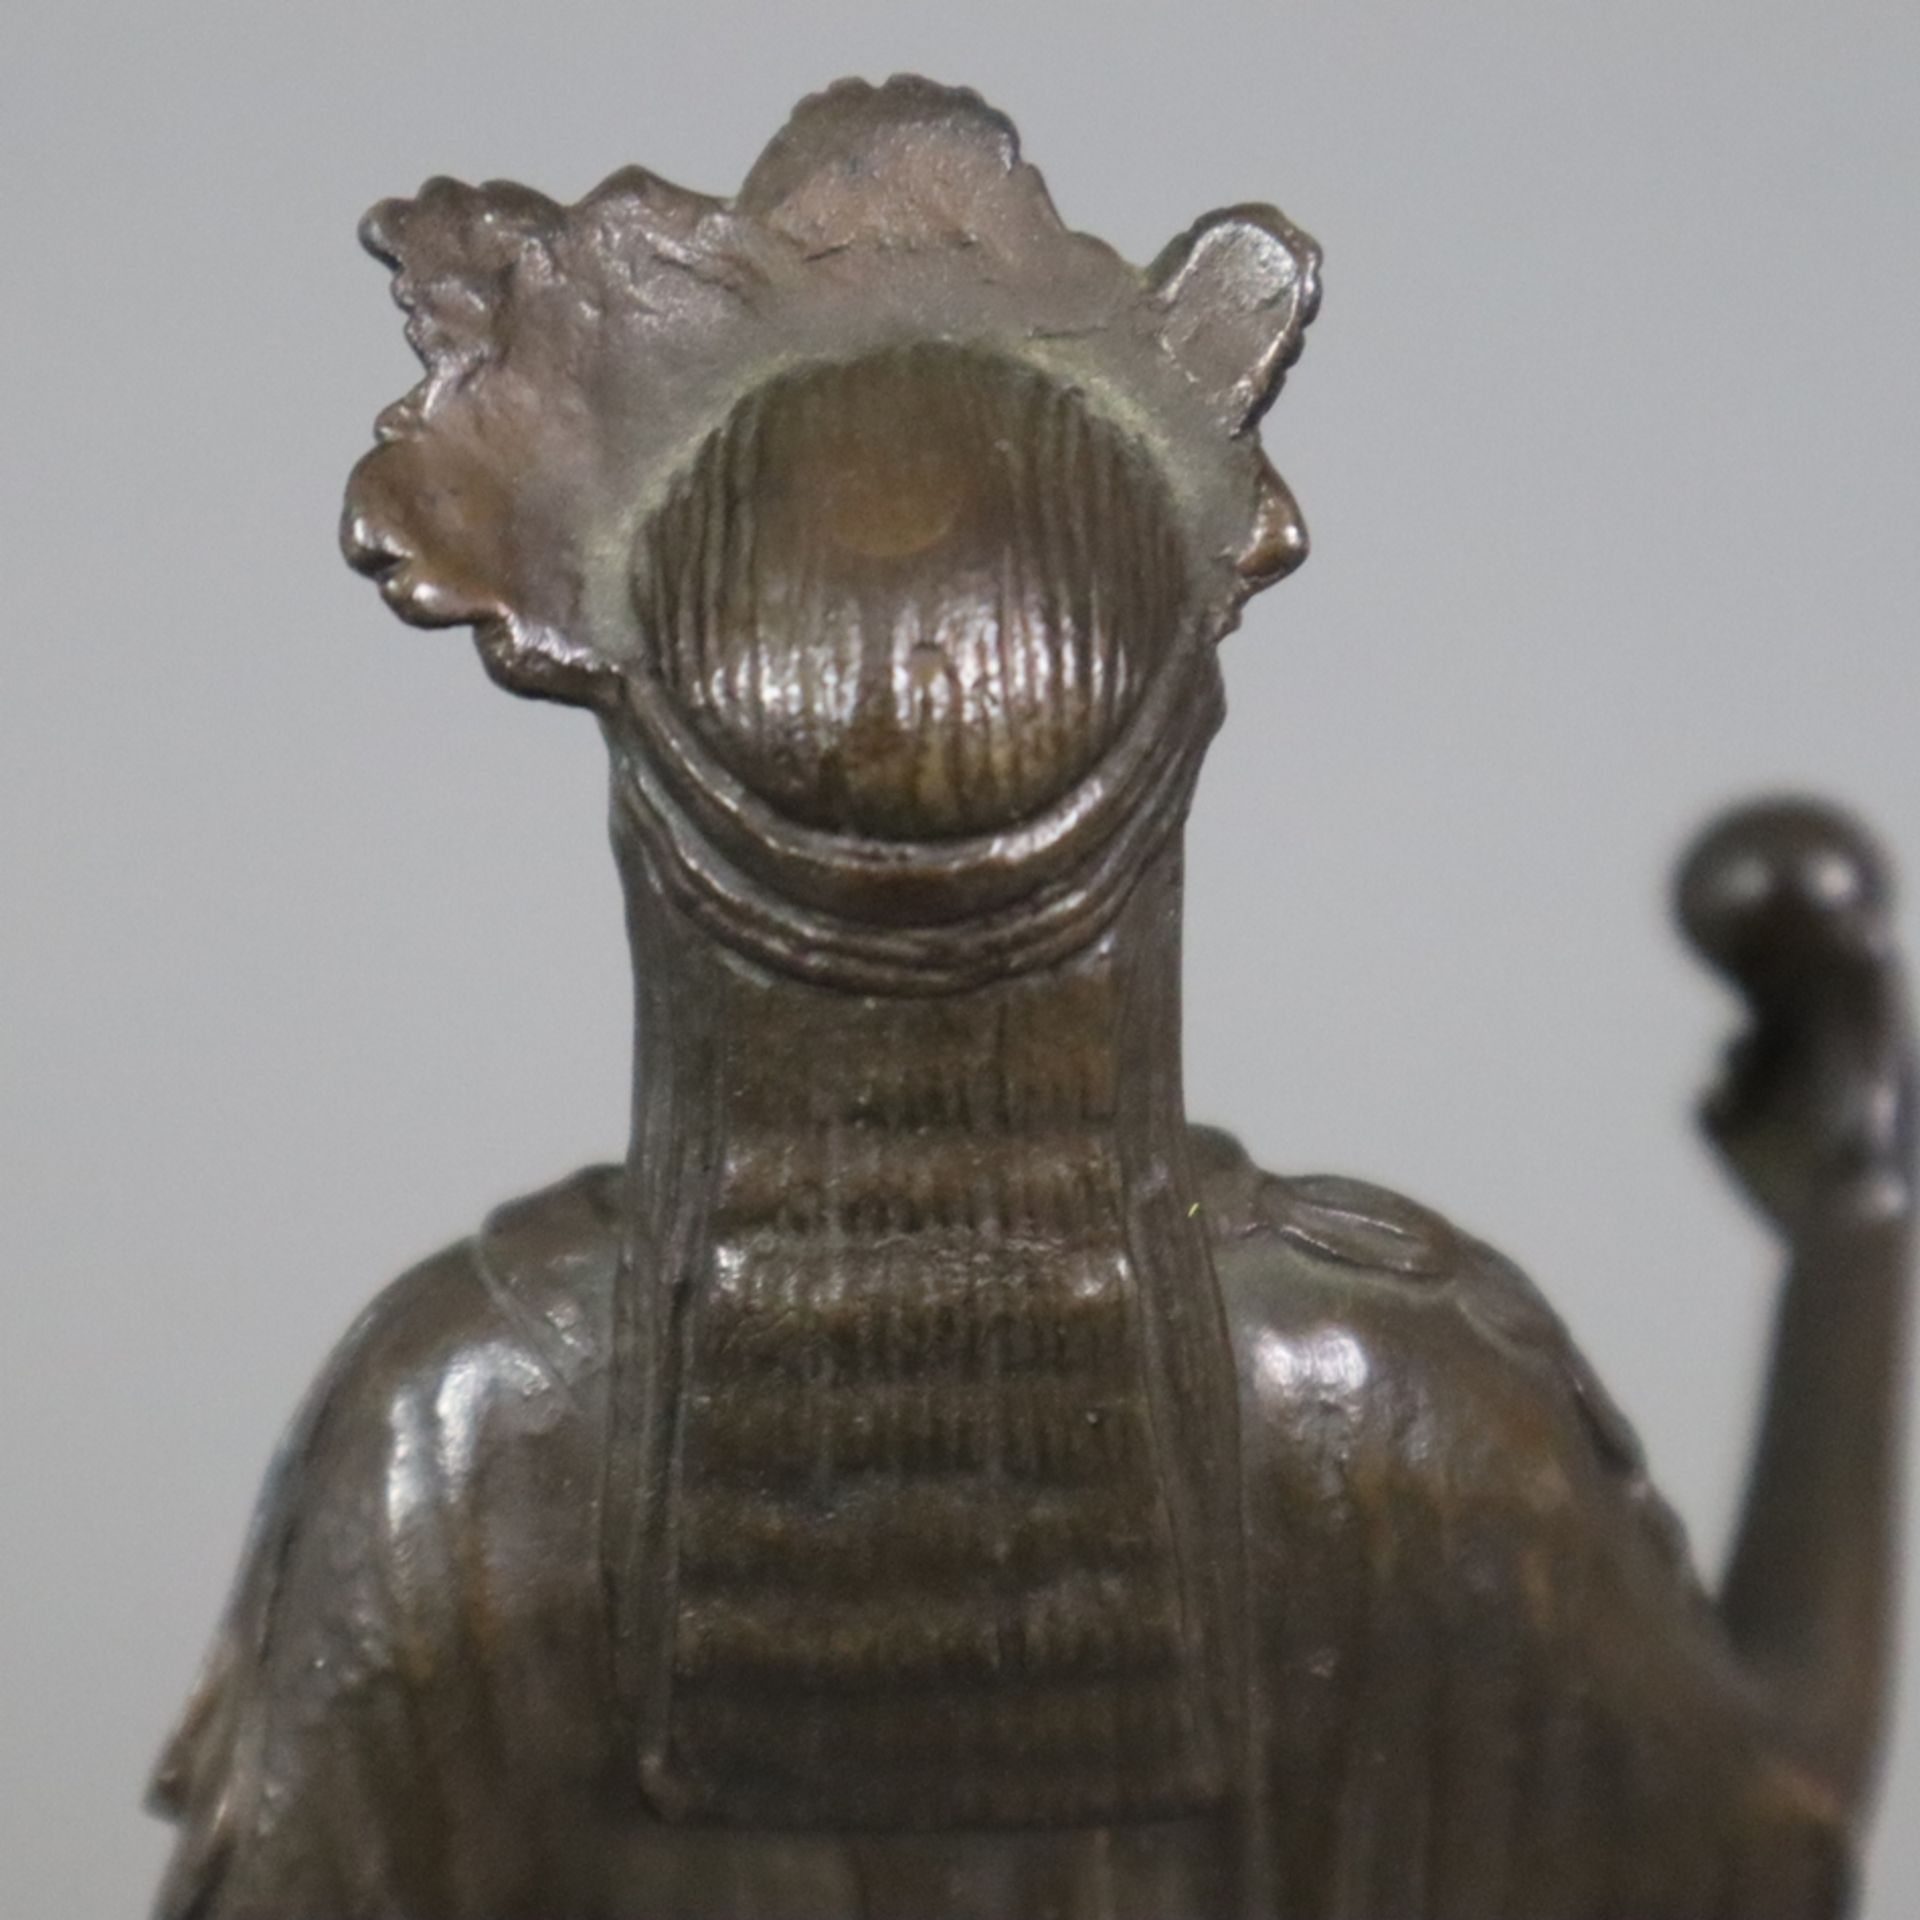 Figurine einer antiken Priesterin - Bronze, braun patiniert, antikisierende Frauenfigur mit Diadem, - Bild 7 aus 8